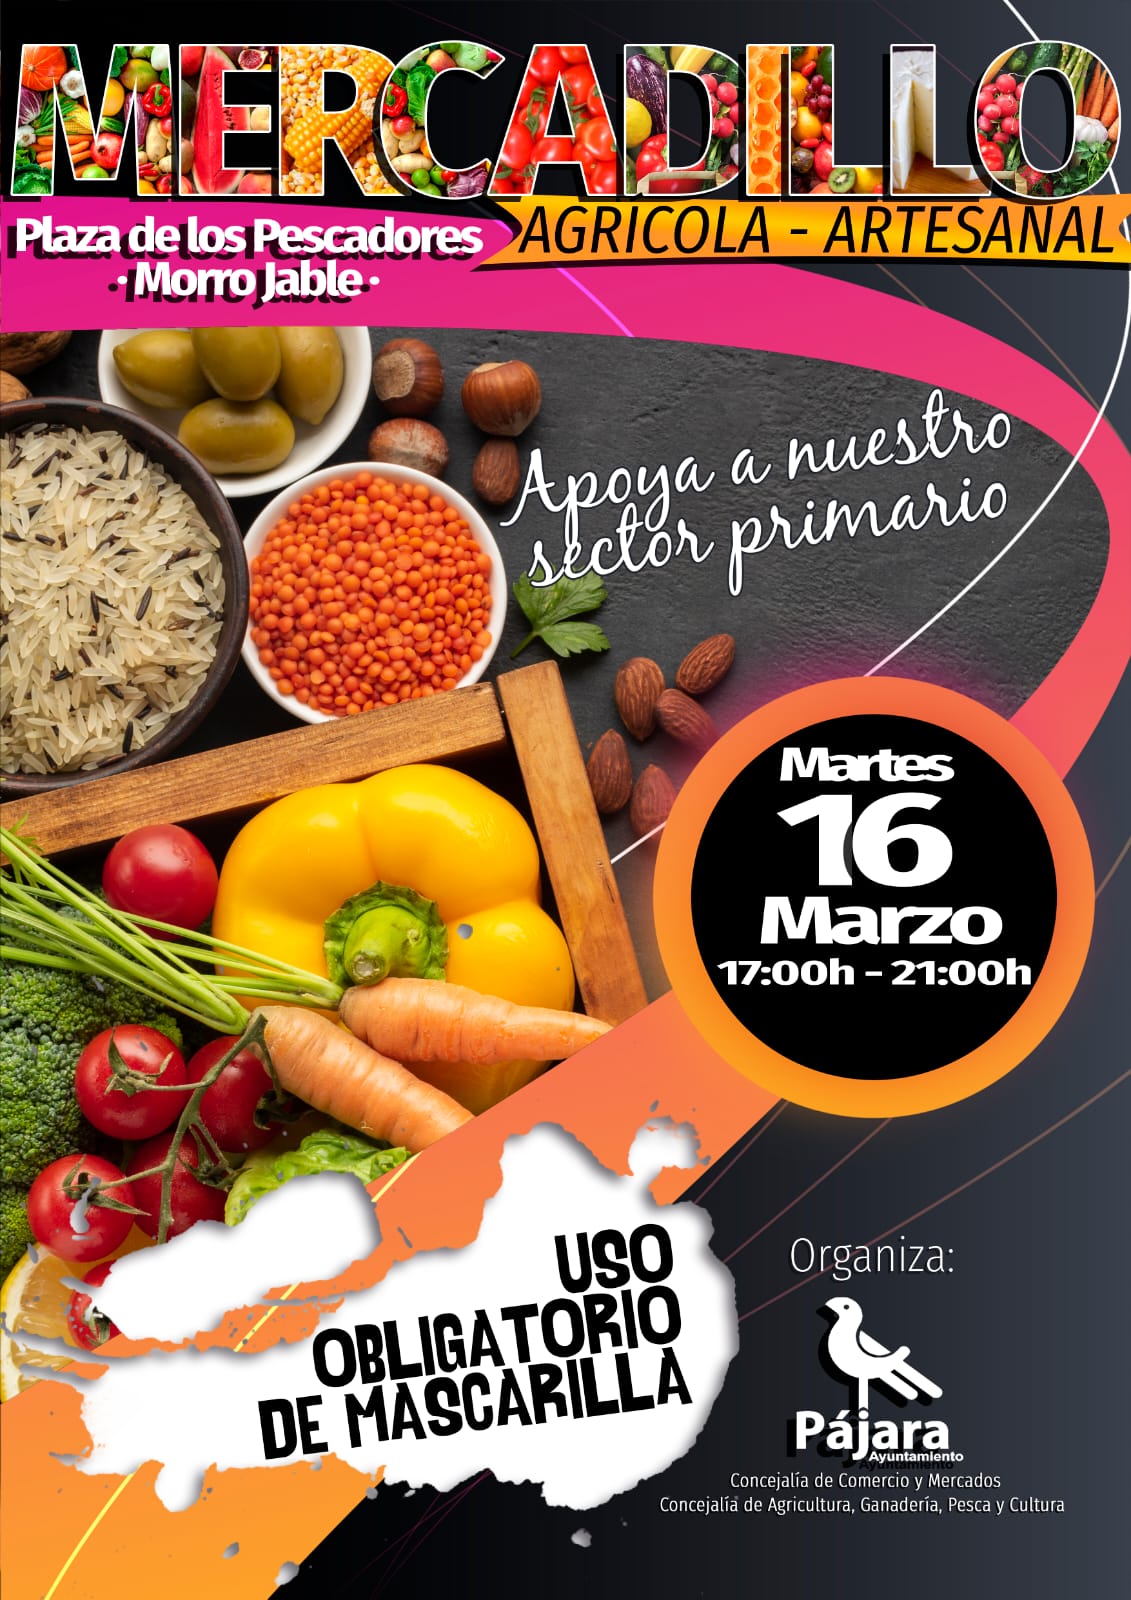 Morro Jable celebra una nueva edición del Mercadillo Agrícola y Artesanal